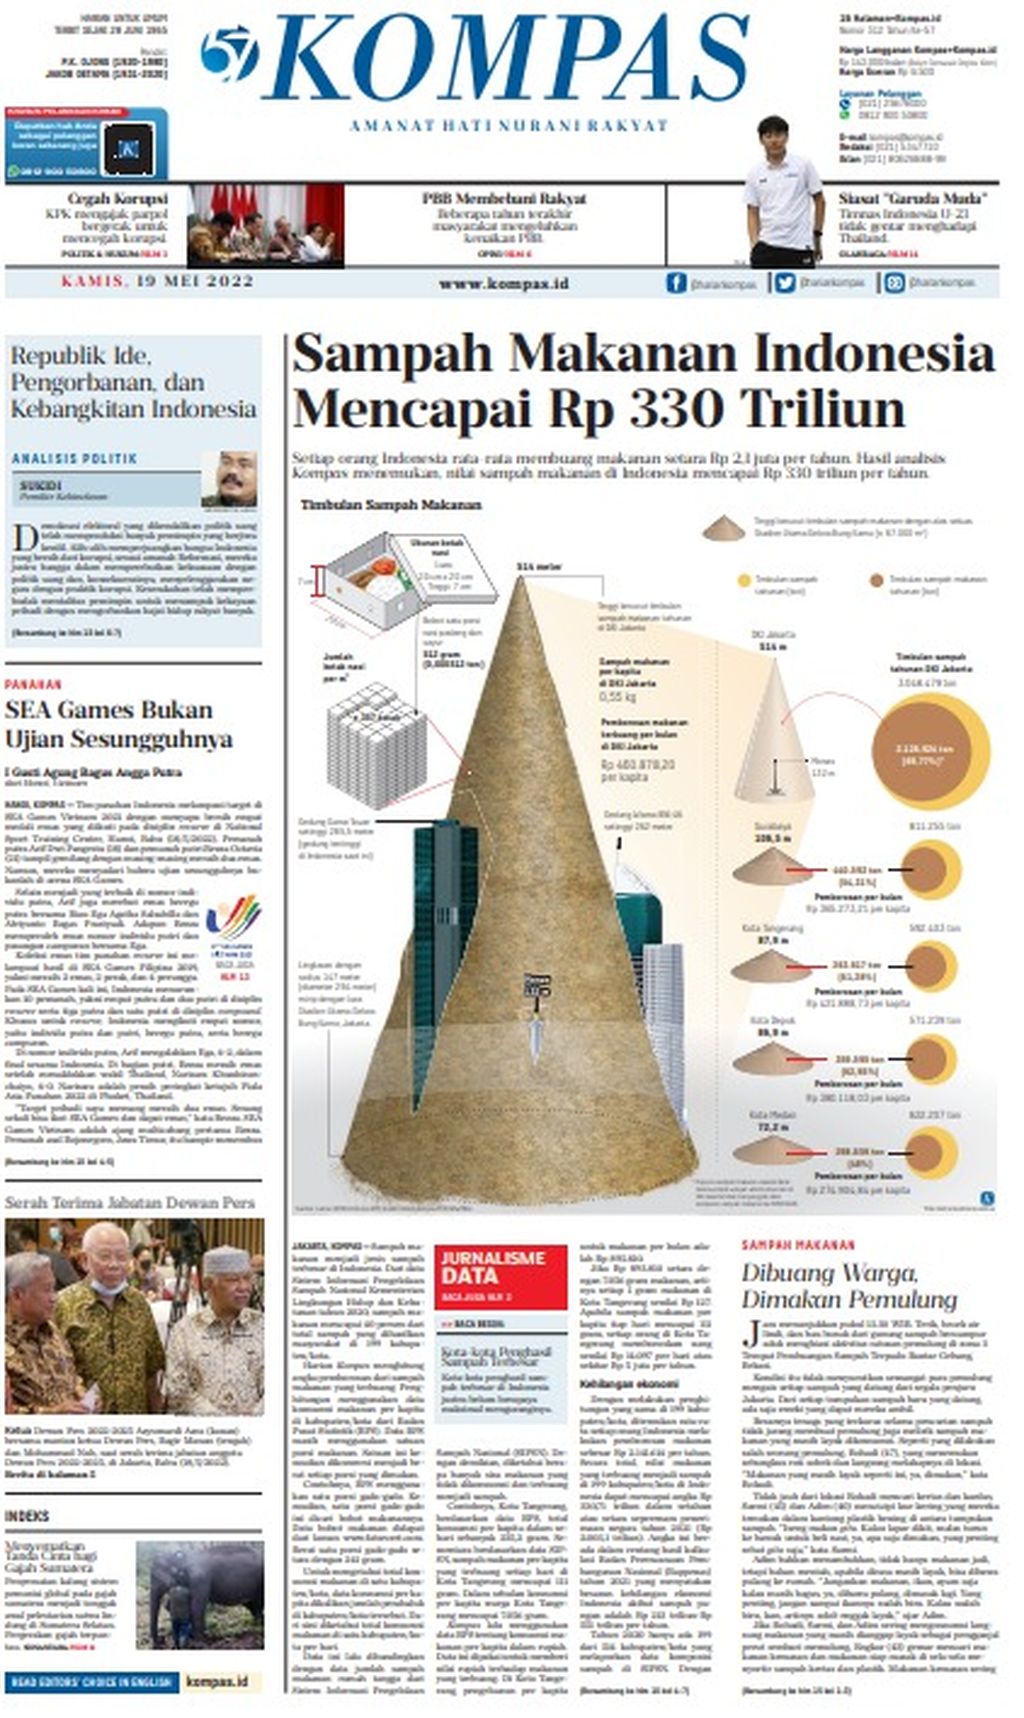 Halaman depan <i>Kompas</i> edisi 19 Mei 2022 yang menurunkan laporan "Sampah Makanan Indonesia Mencapai Rp 330 Triliun".